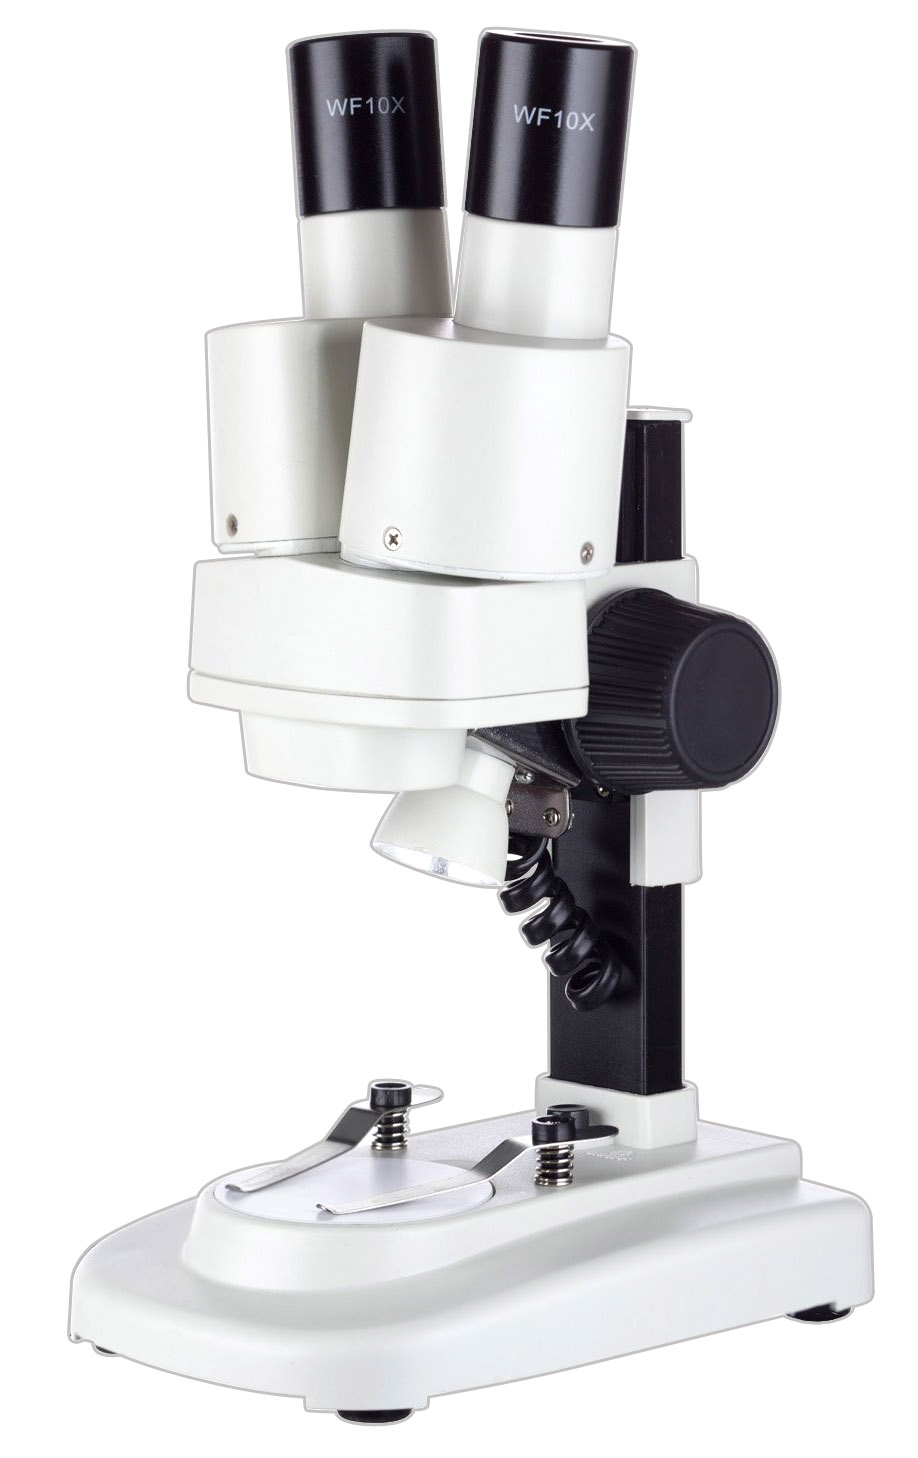 Remek áron vásárolhat hatékony mikroszkópot.